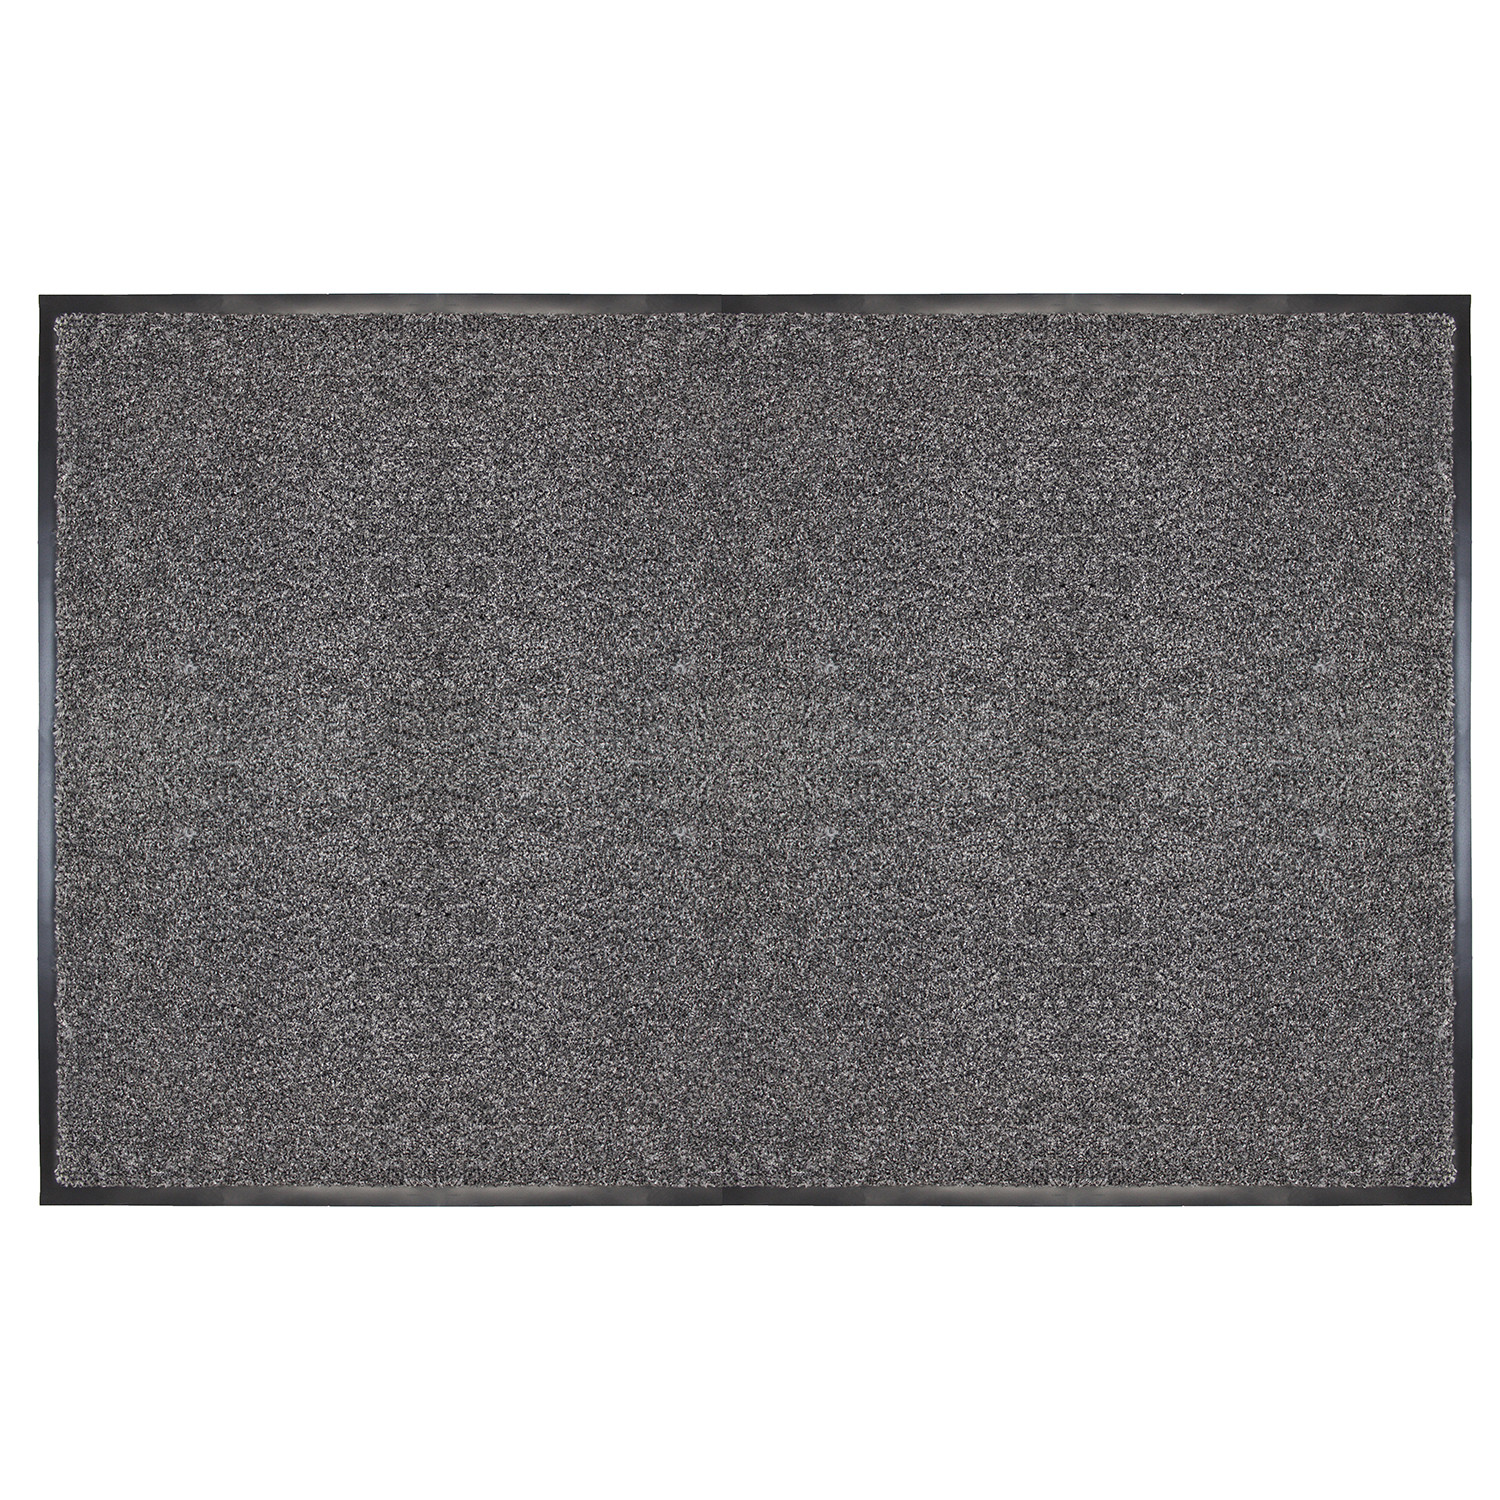 Primeur Black Barrier Doormat 60 x 40cm Image 3